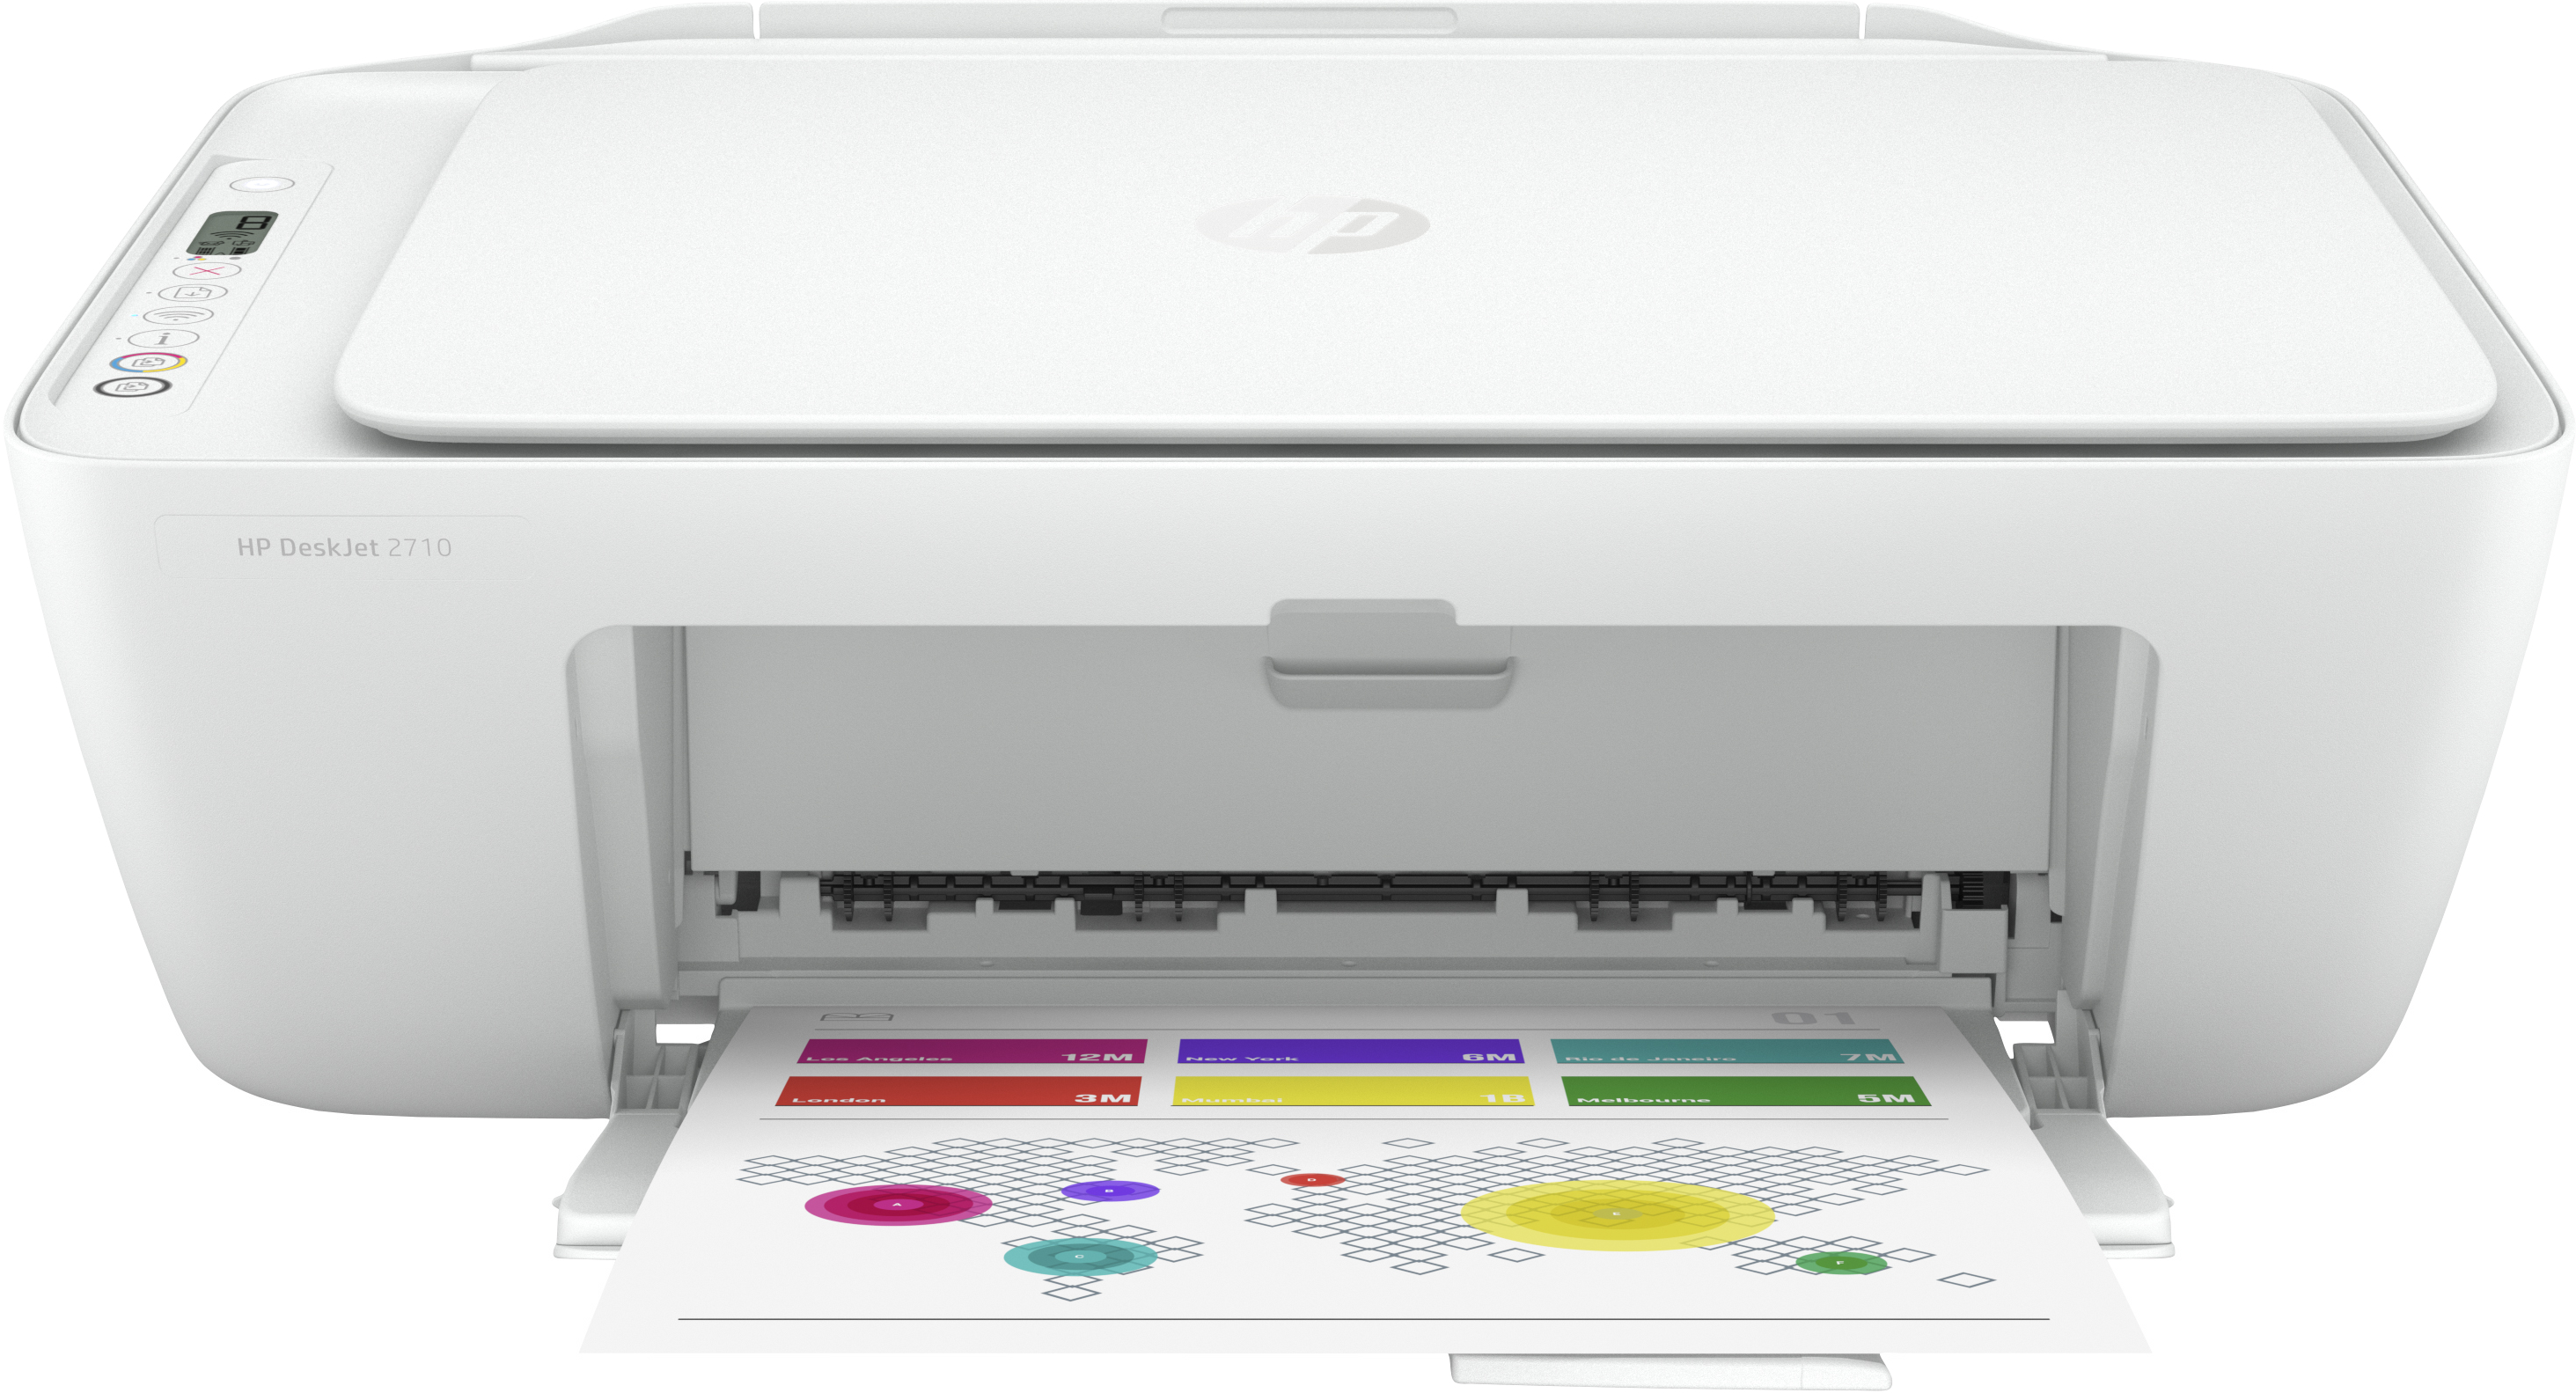 HP DeskJet HP DeskJet 2710 All-in-One printer, Kleur, Printer voor Home, Printen, kopiëren, scannen, Draadloos; Geschikt voor HP Instant Ink; Printen vanaf een telefoon of tablet